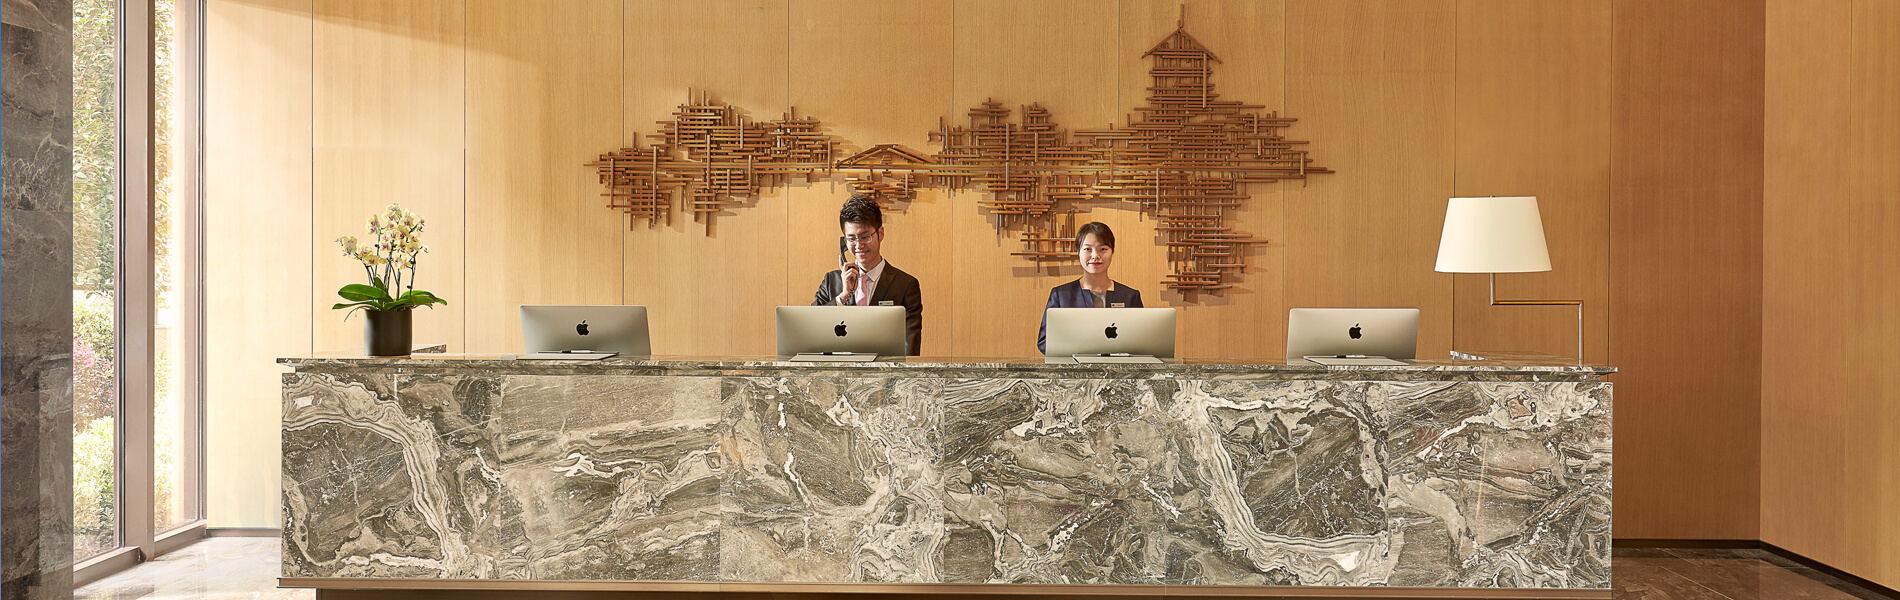 At a Glance - Shama Serviced Apartments Zijingang Hangzhou